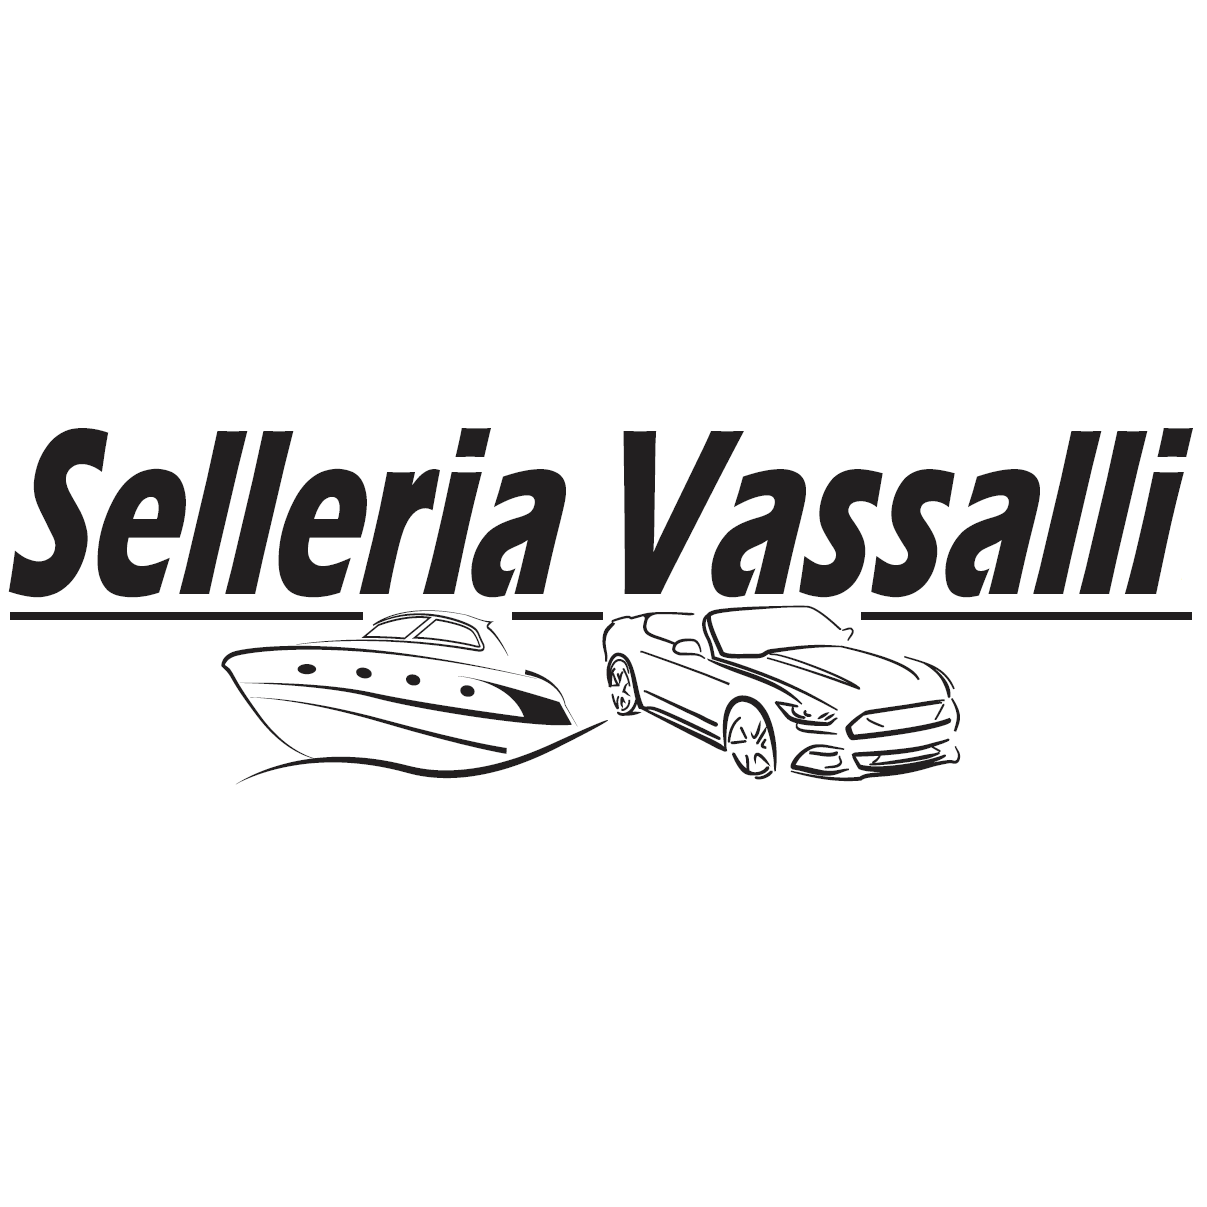 Selleria Vassalli Logo